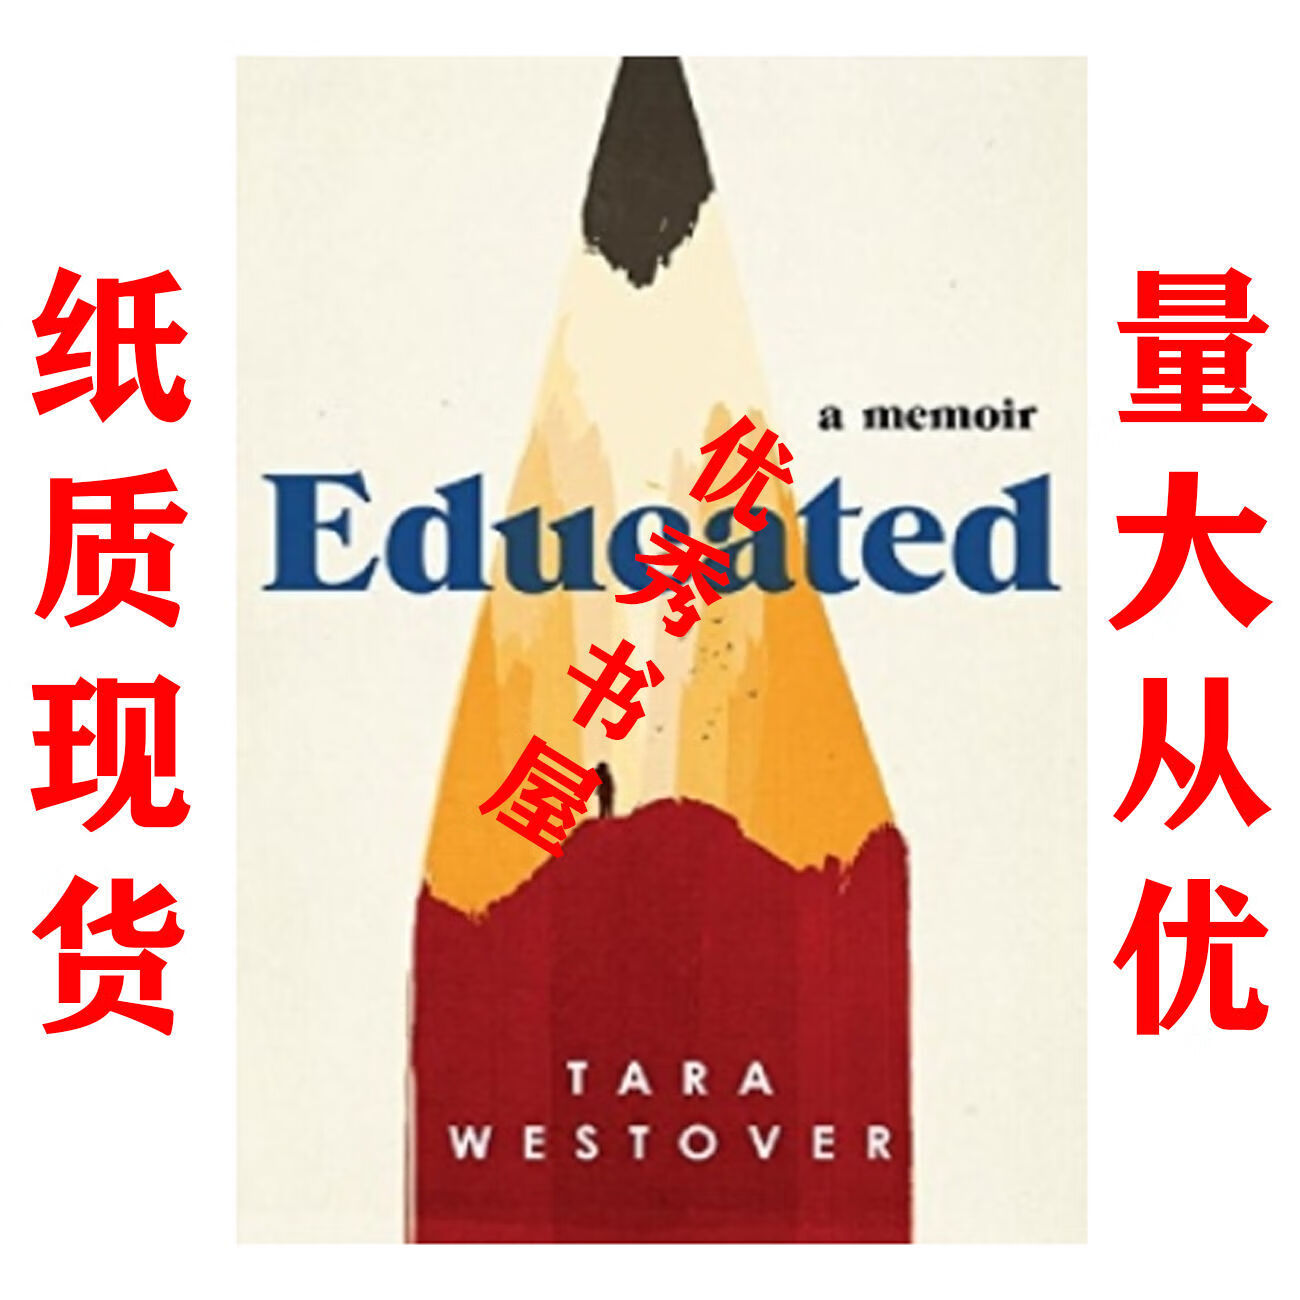 纸质现货Educated - Tara Westover epub格式下载